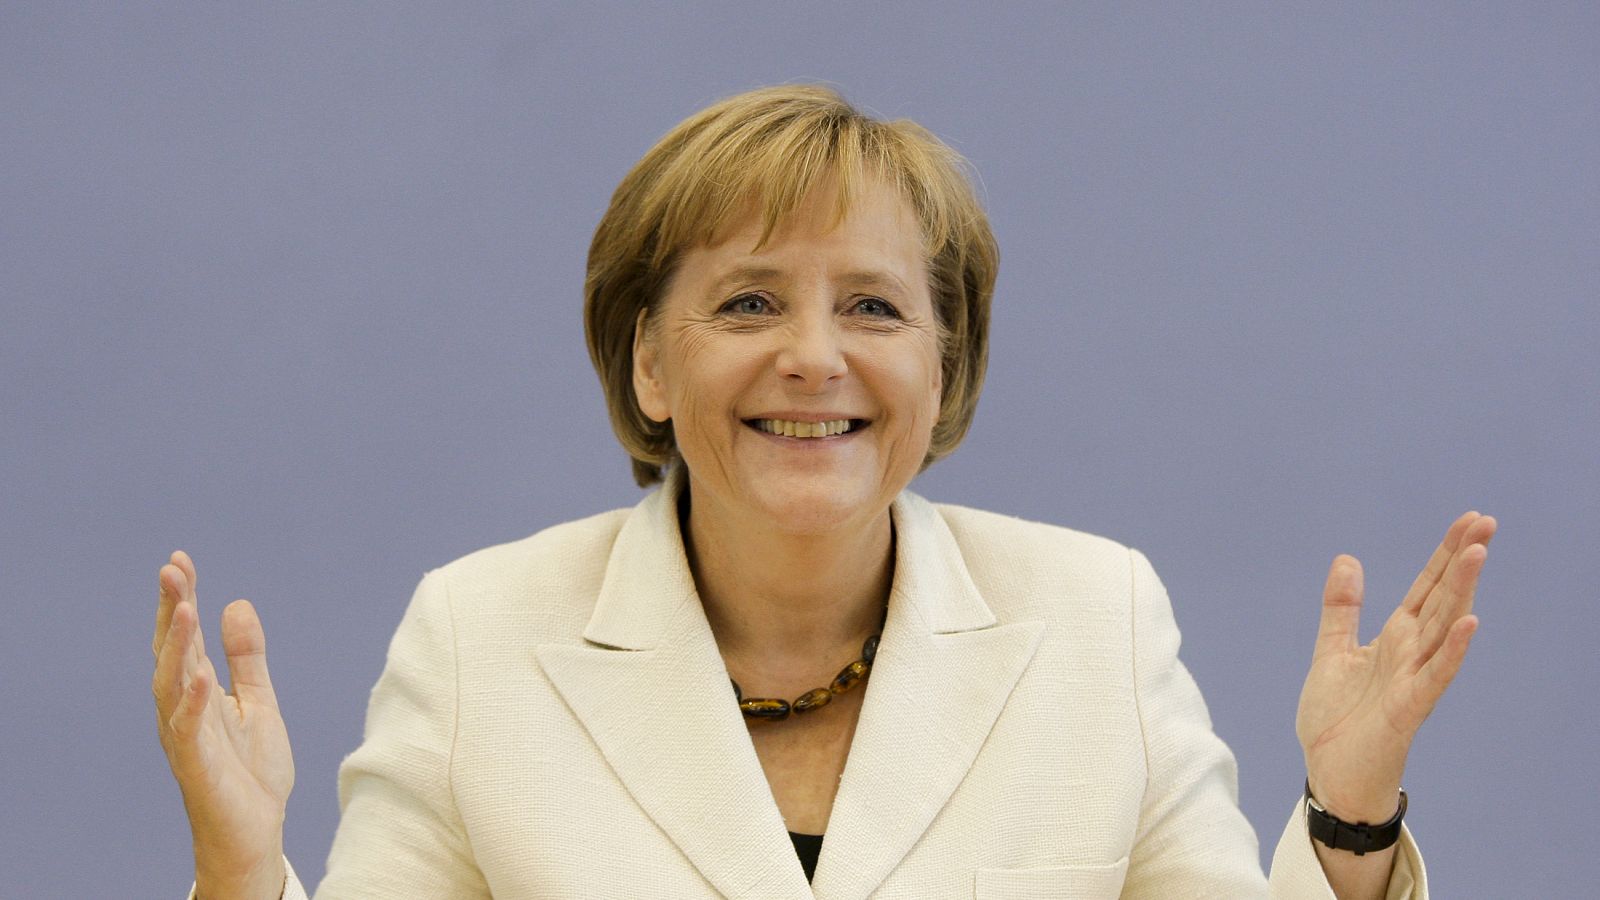 La canciller Merkel, durante una conferencia de prensa en Berlín.